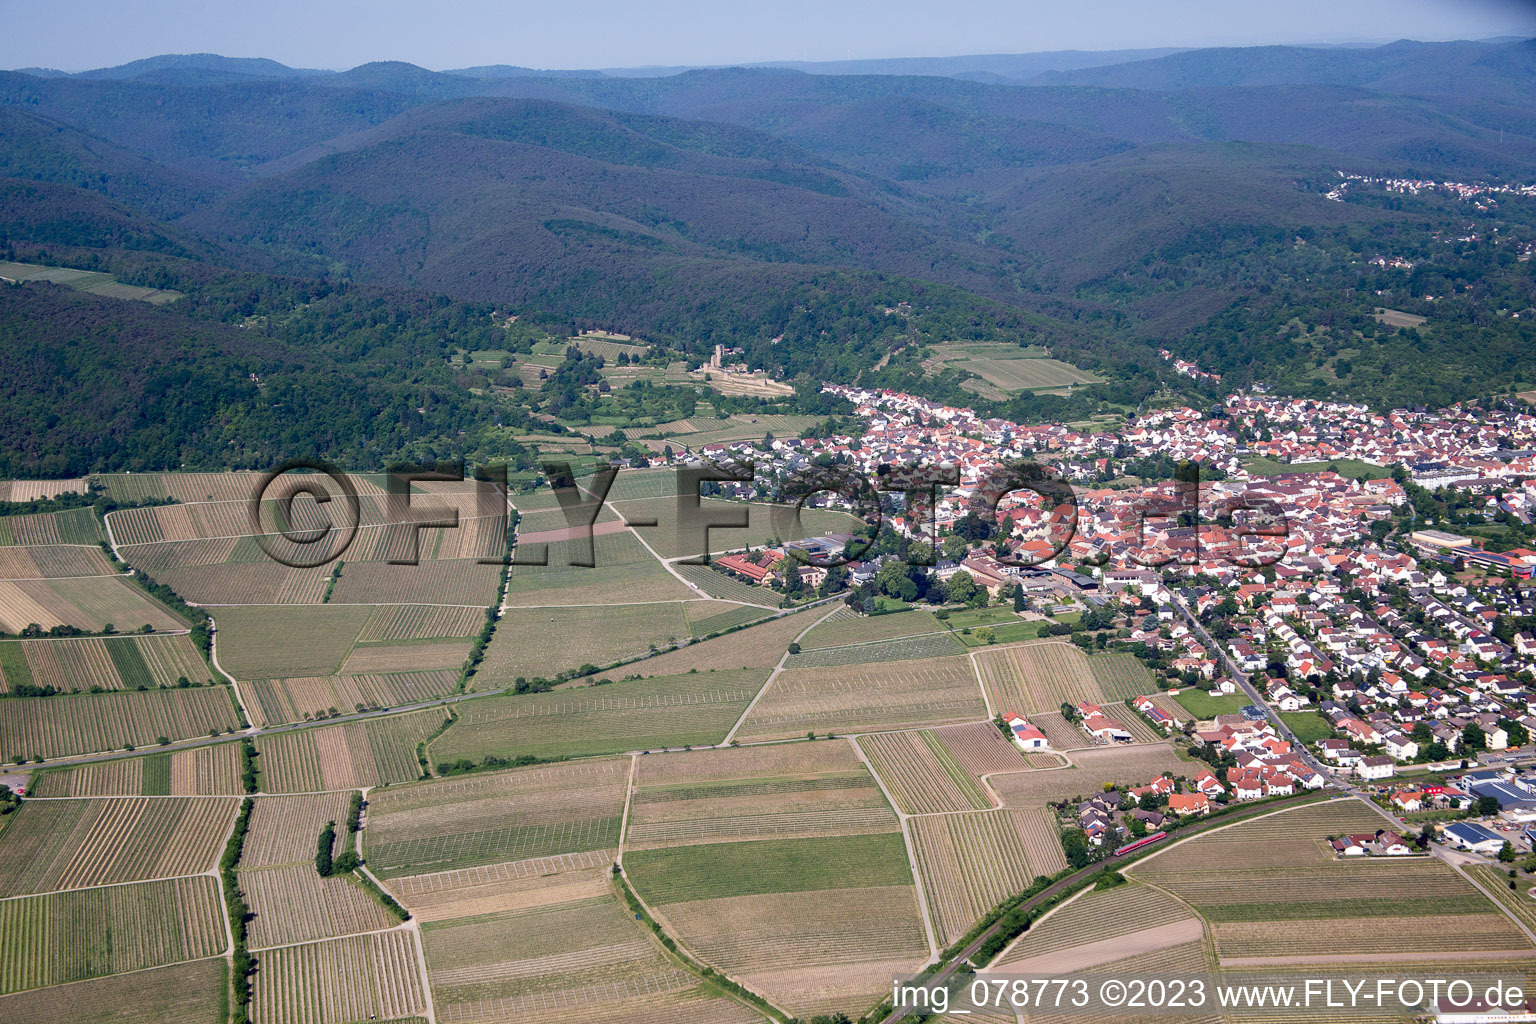 Luftbild von Wachenheim in Wachenheim an der Weinstraße im Bundesland Rheinland-Pfalz, Deutschland